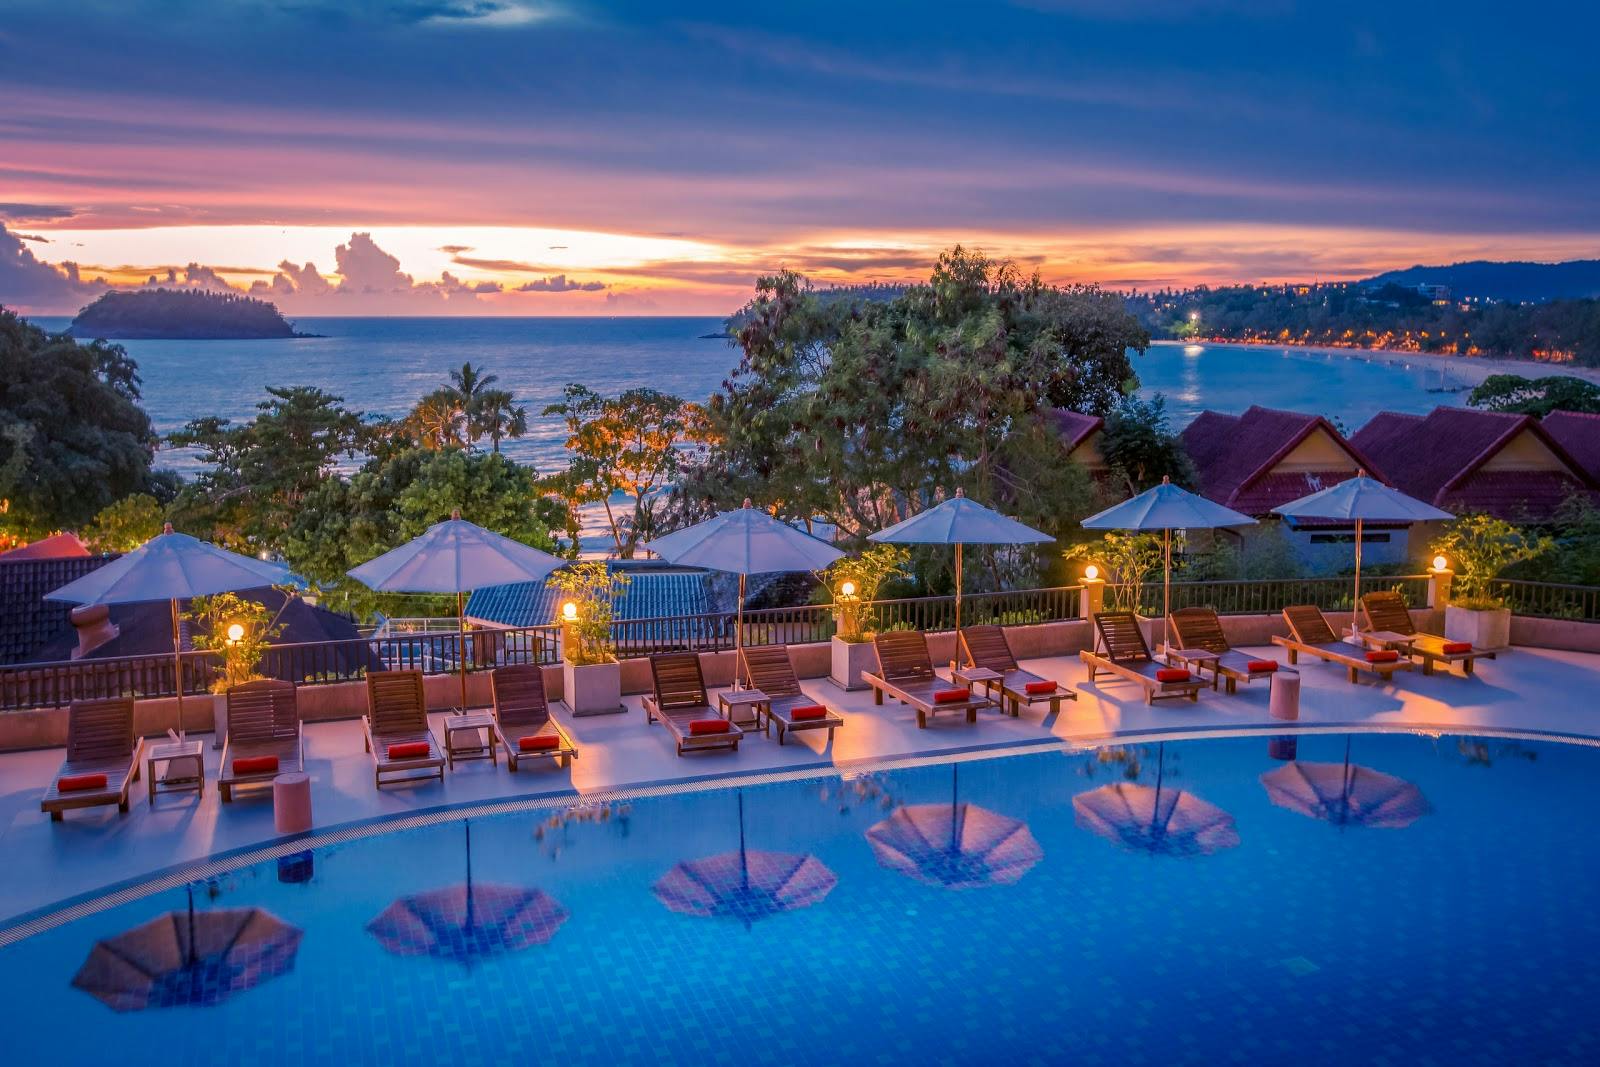 Image - Chanalai Garden Resort, Kata Beach - Phuket